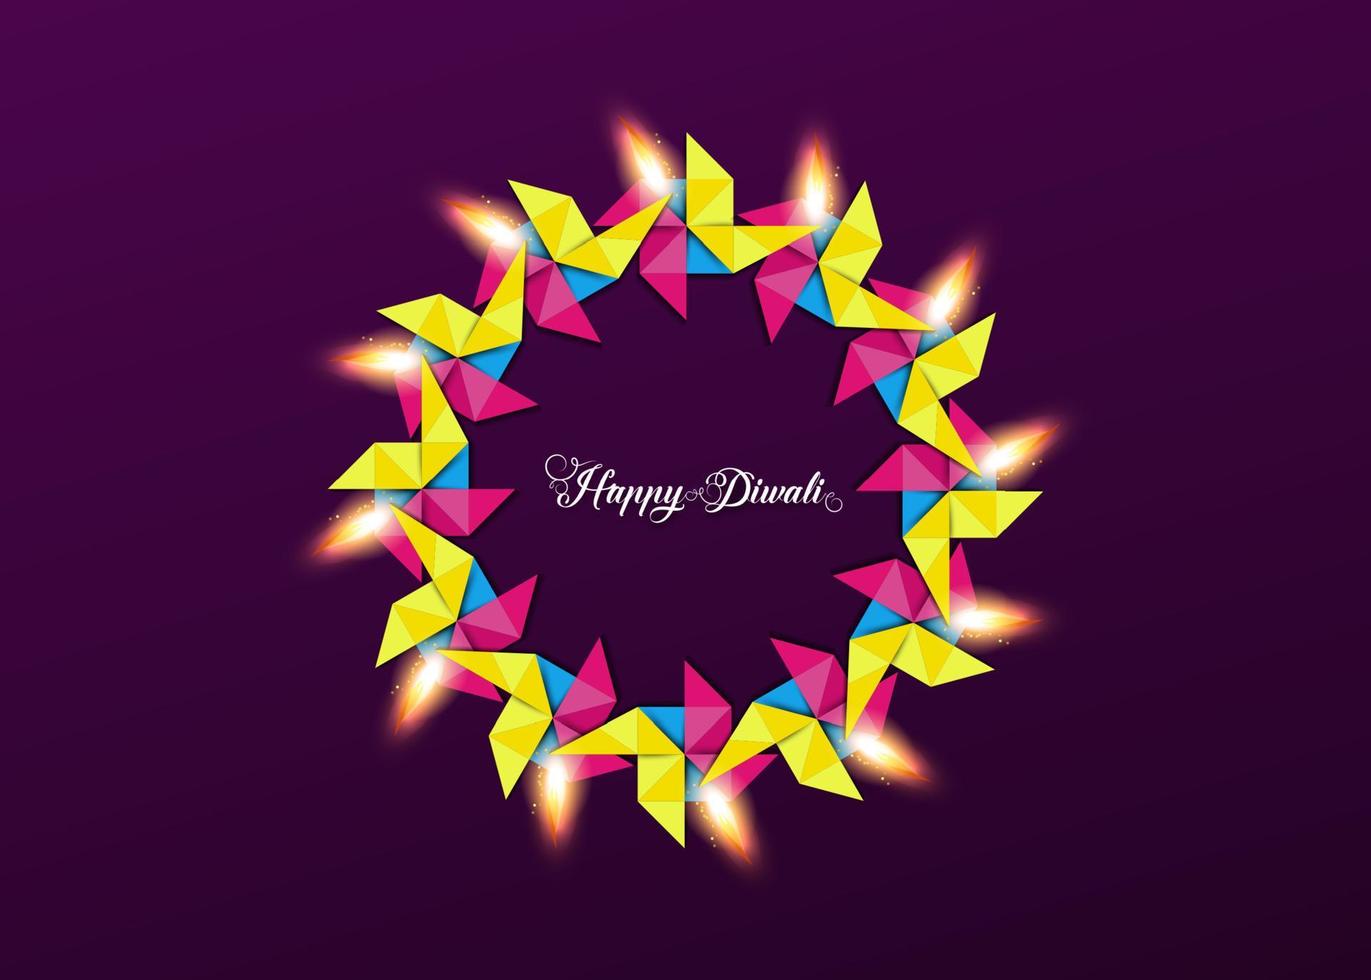 joyeux diwali fête des lumières célébration, modèle coloré, couronne de lumières en papier origami conception graphique de lampes à huile indiennes diya, style d'art de bannière vecteur design plat moderne, fond violet